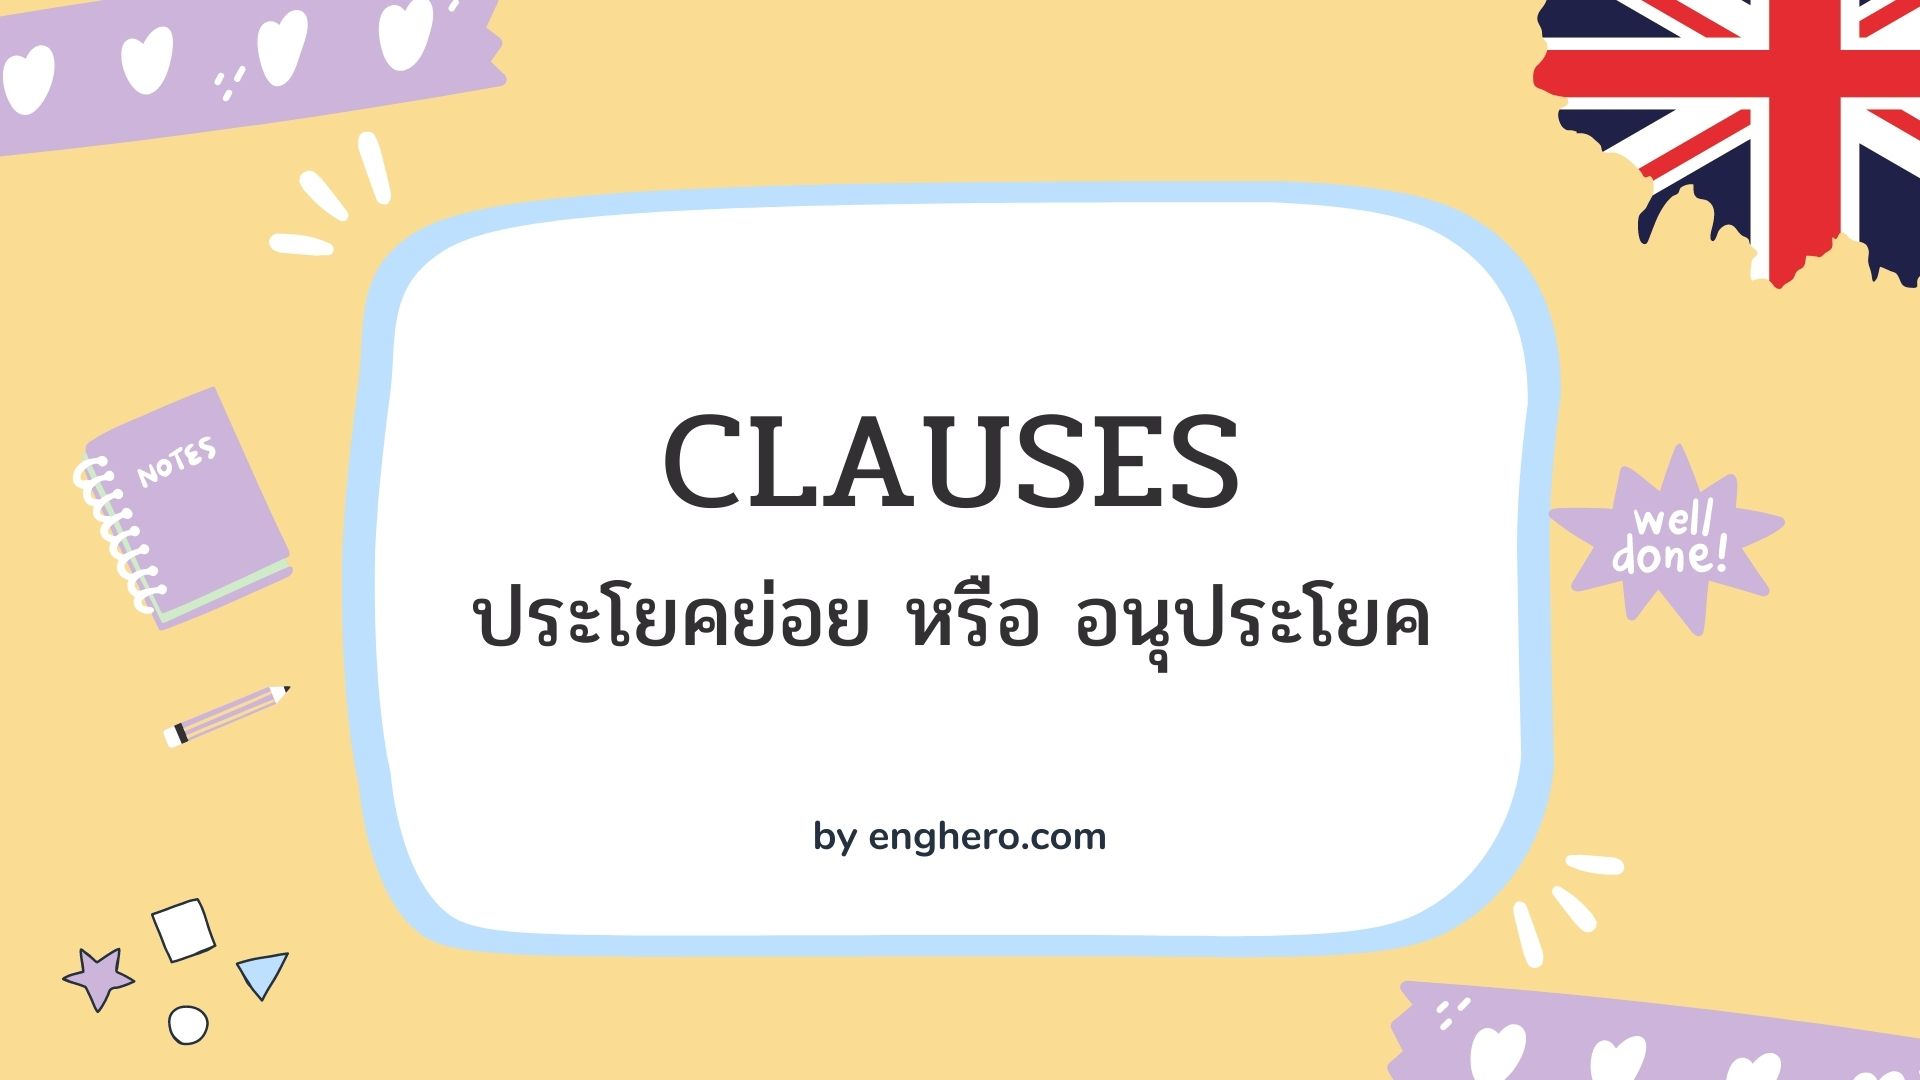 Clauses ประโยคย่อย หรือ อนุประโยค